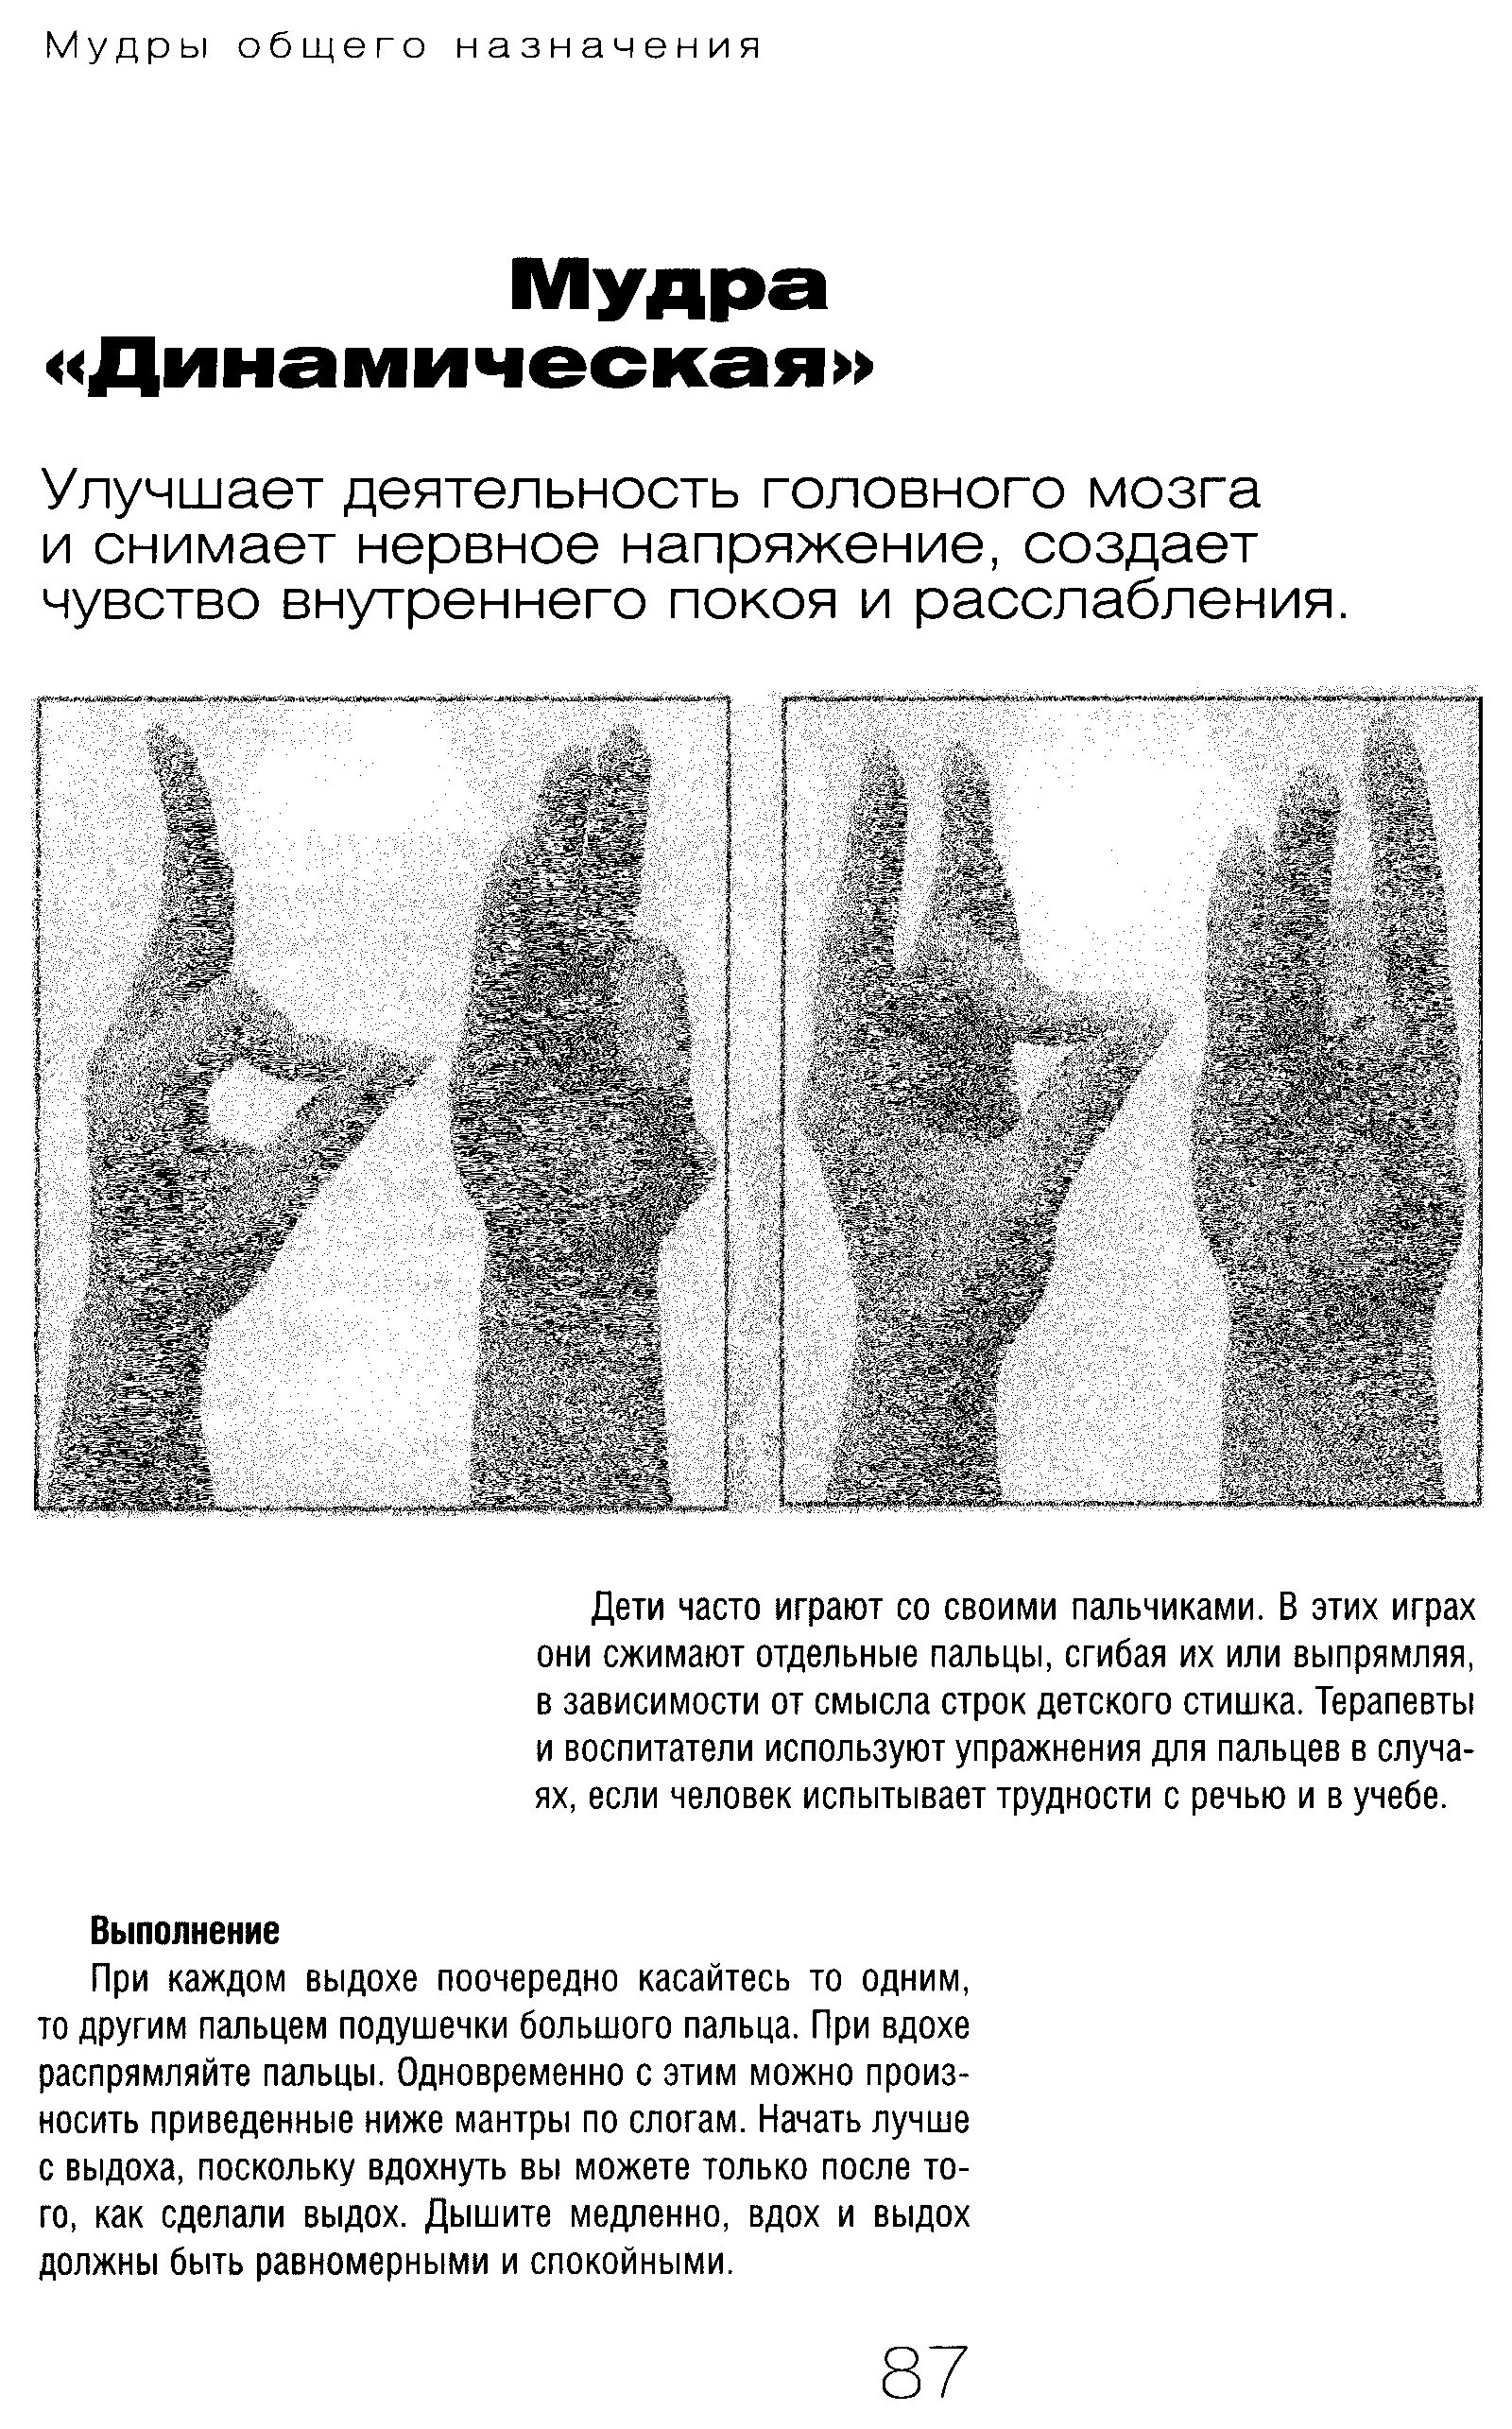 Как использовать мудры. Мудры гимнастика для пальцев рук. Йога для пальцев исцеляющие мудры. Мудры для пальцев рук йога для пальцев. Мудры упражнения для пальцев рук.